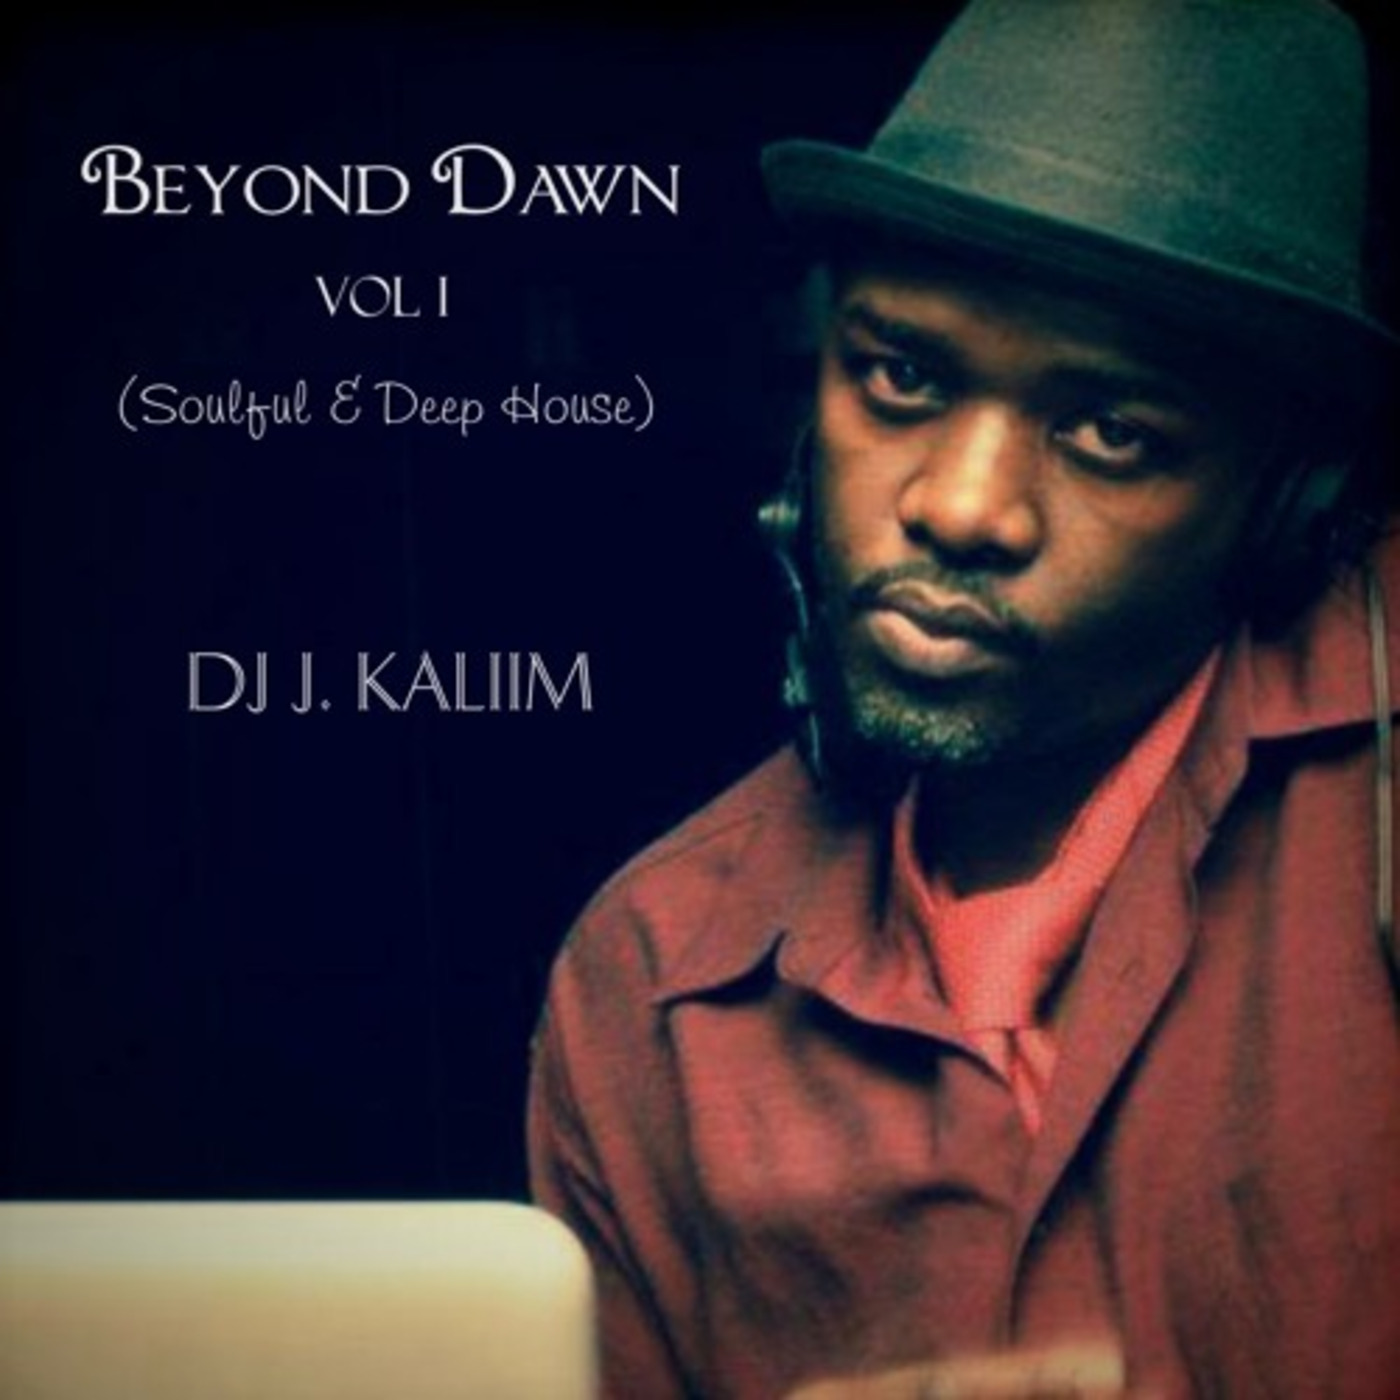 Beyond Dawn Vol 1 (Soulful - Deep Mix)